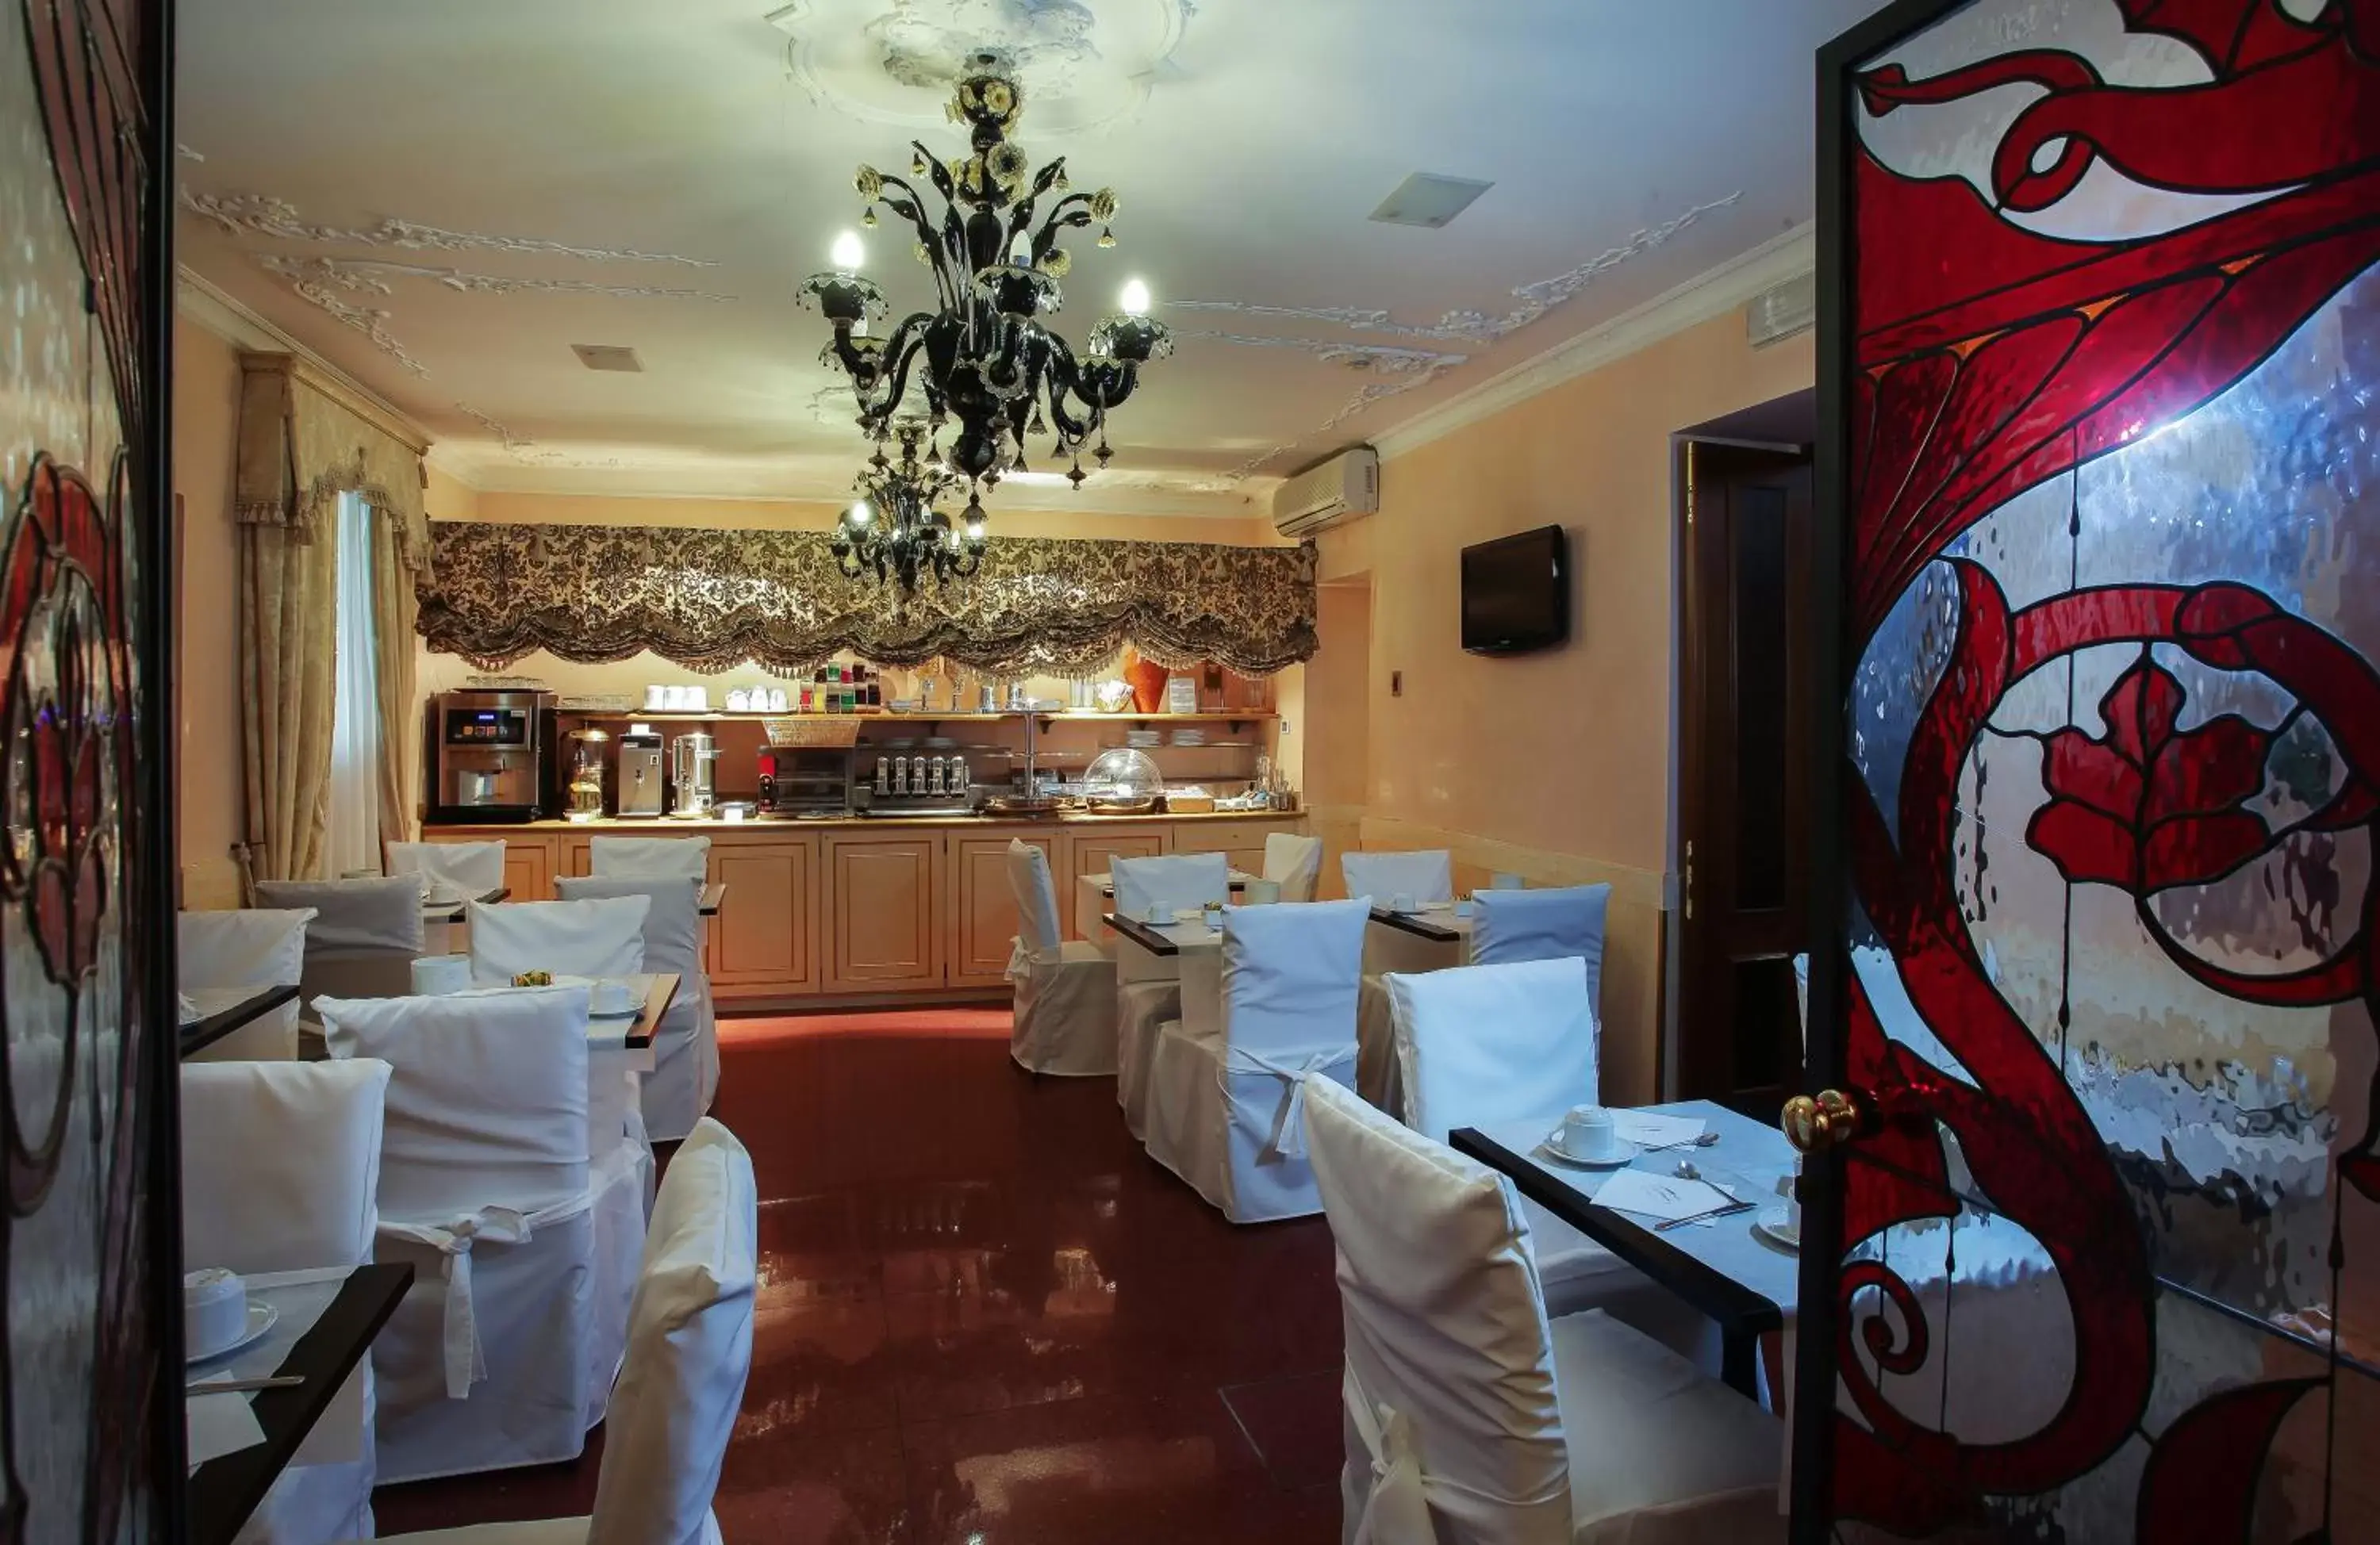 Banquet/Function facilities, Banquet Facilities in Hotel Ca' Alvise